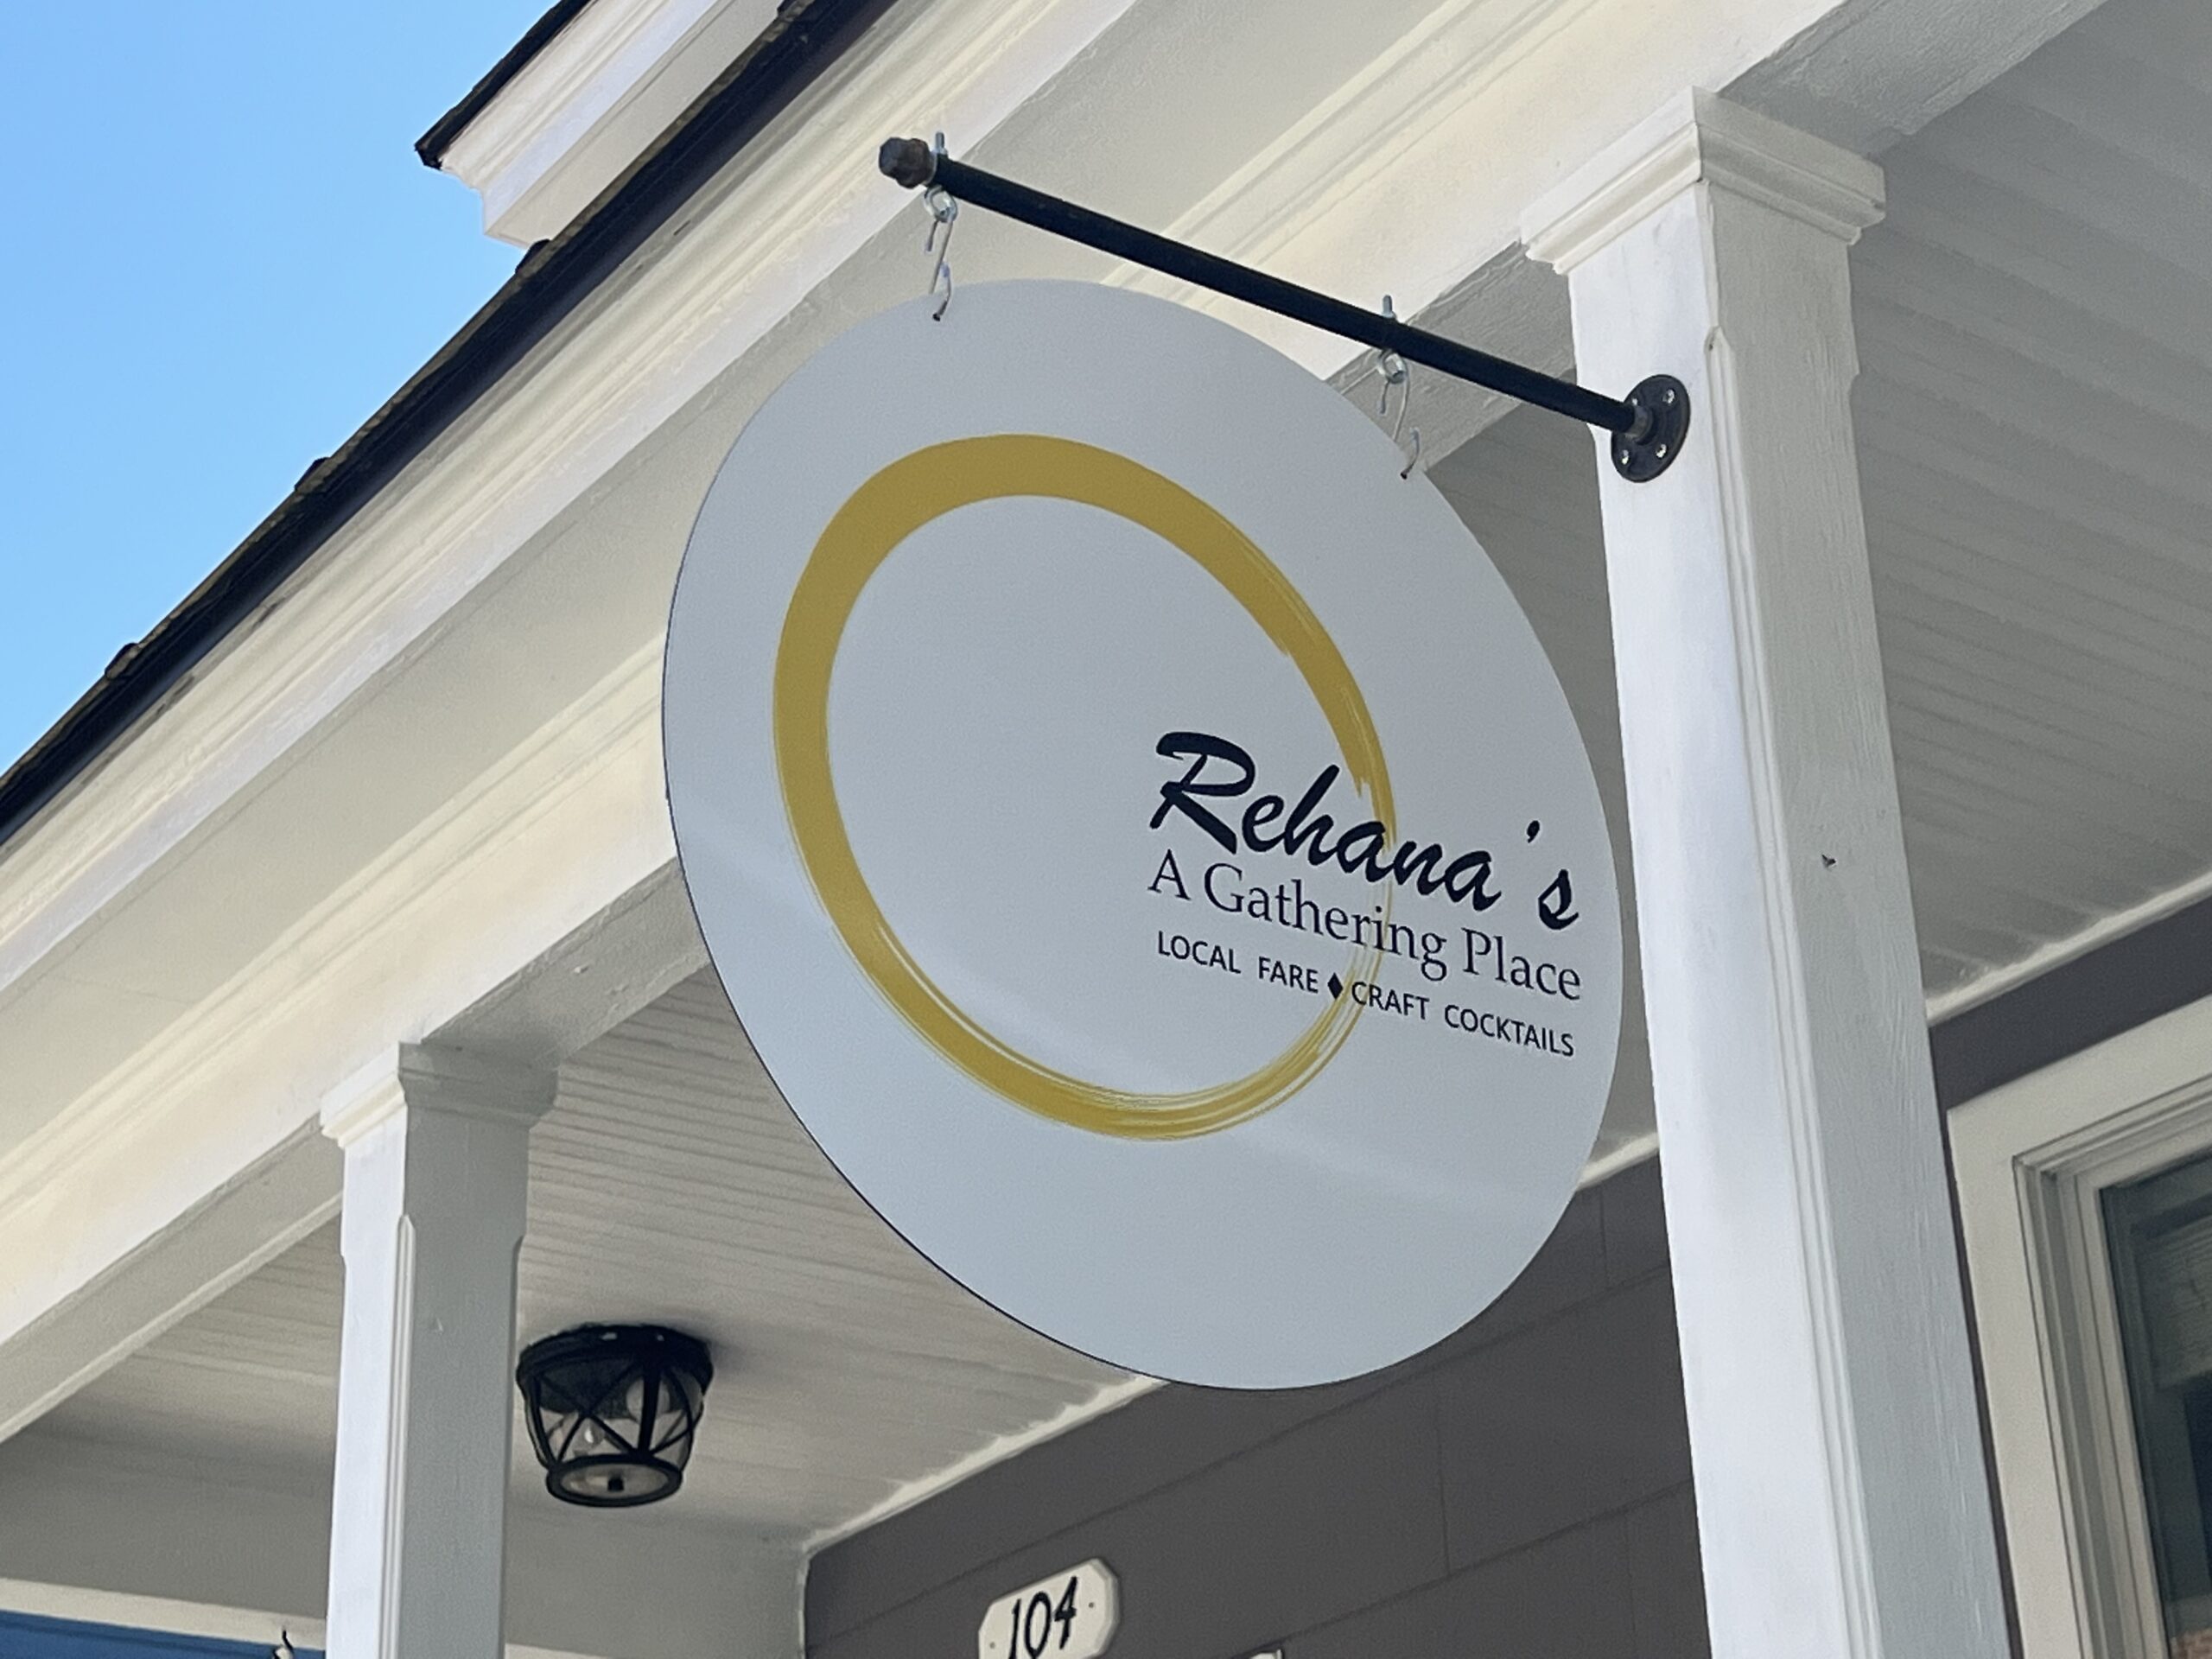 Rehana’s now open on Wolfe Street